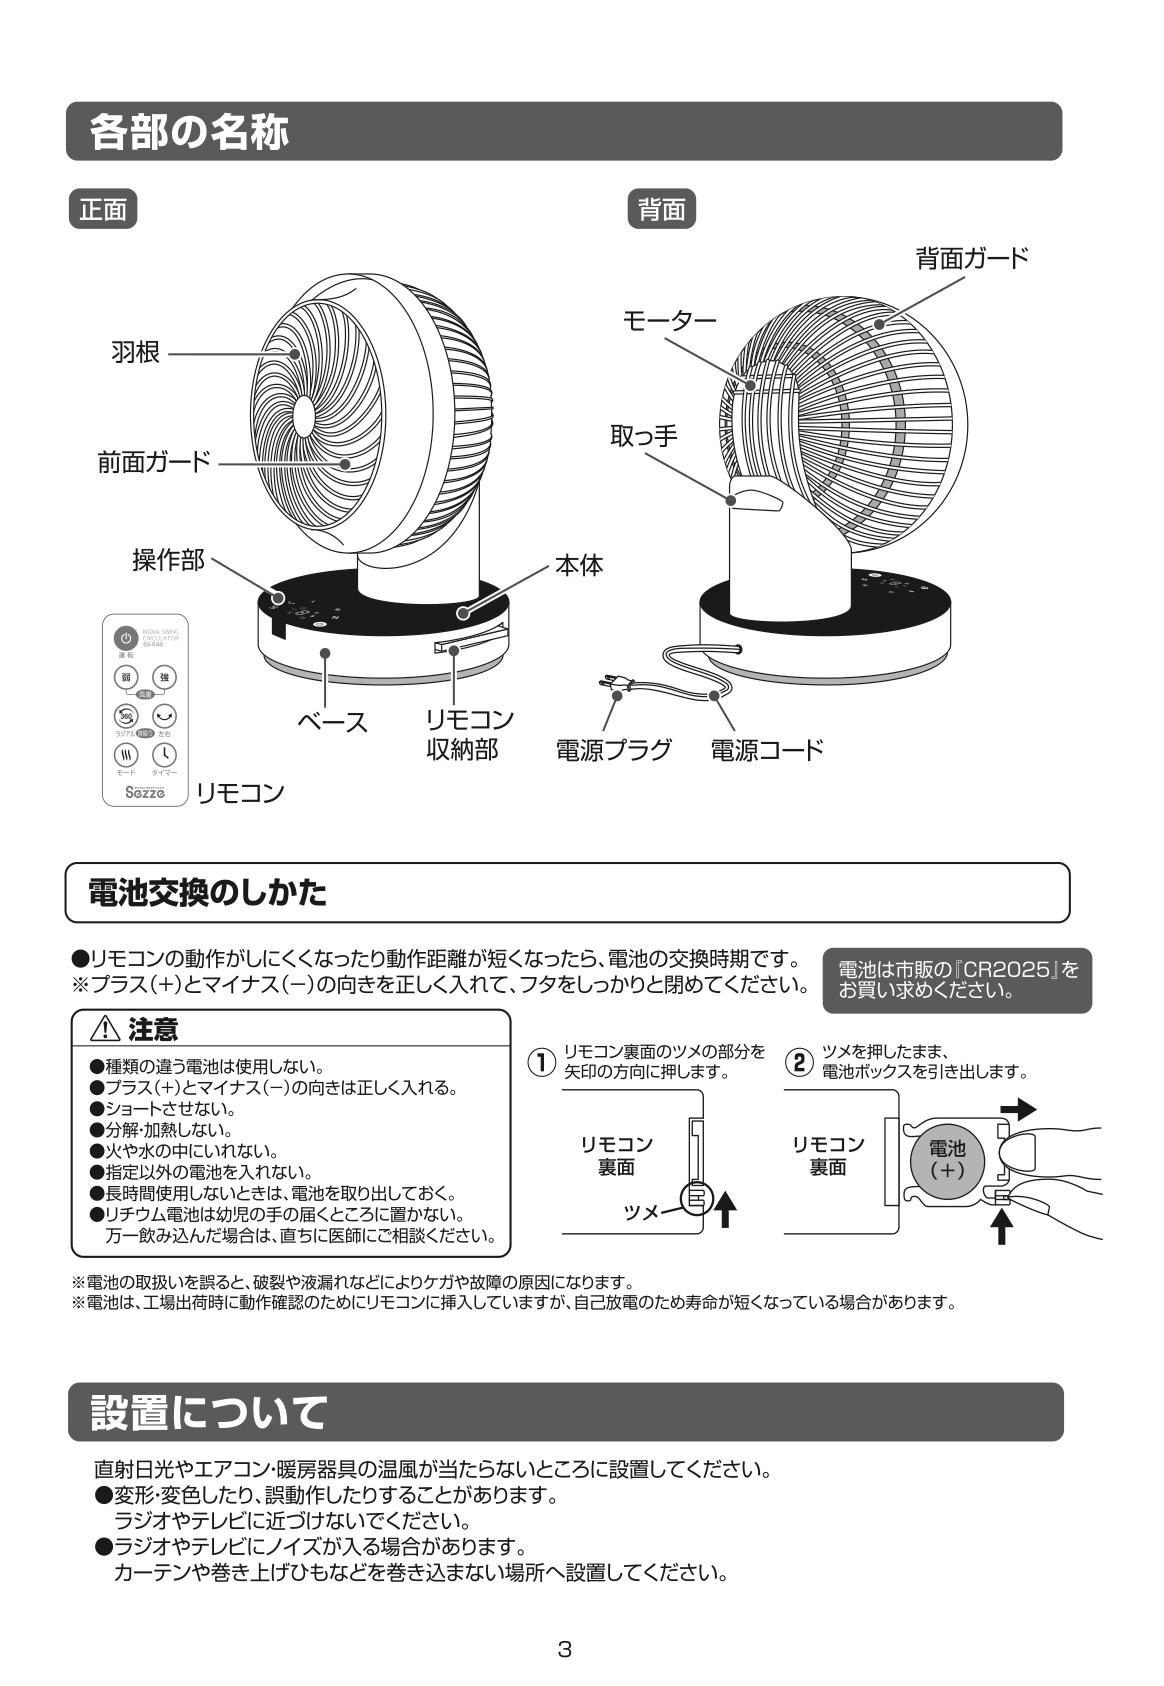 日本最畅销的西哲sezze循环扇，一推上市立即售罄